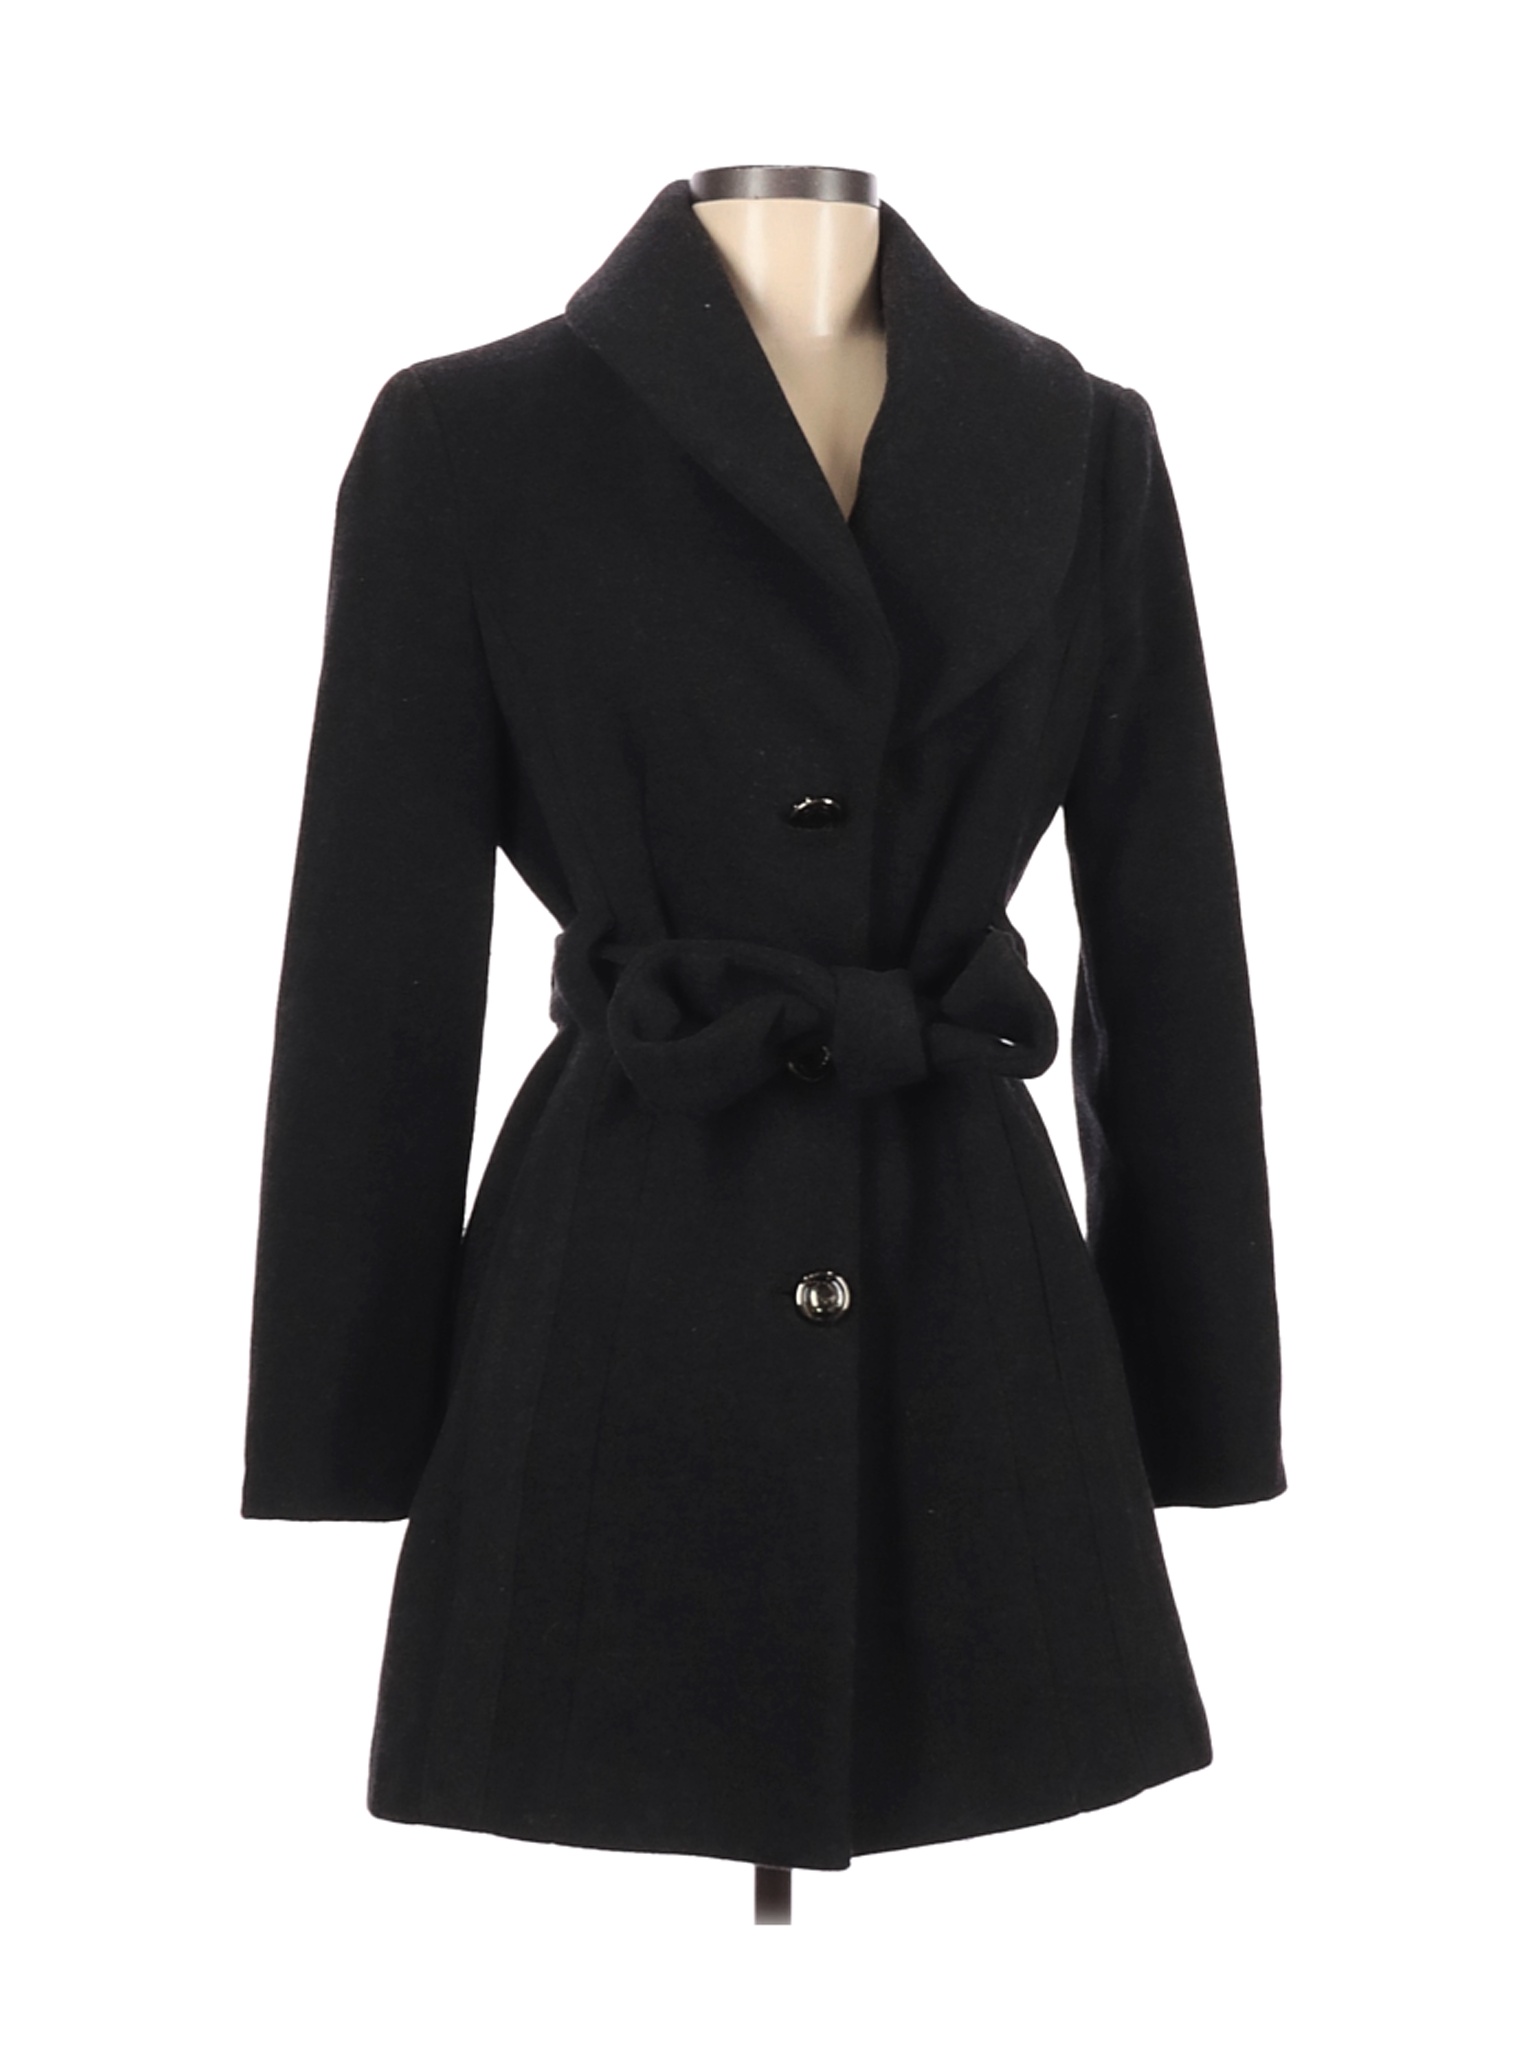 Calvin Klein Women Black Wool Coat 4 | eBay